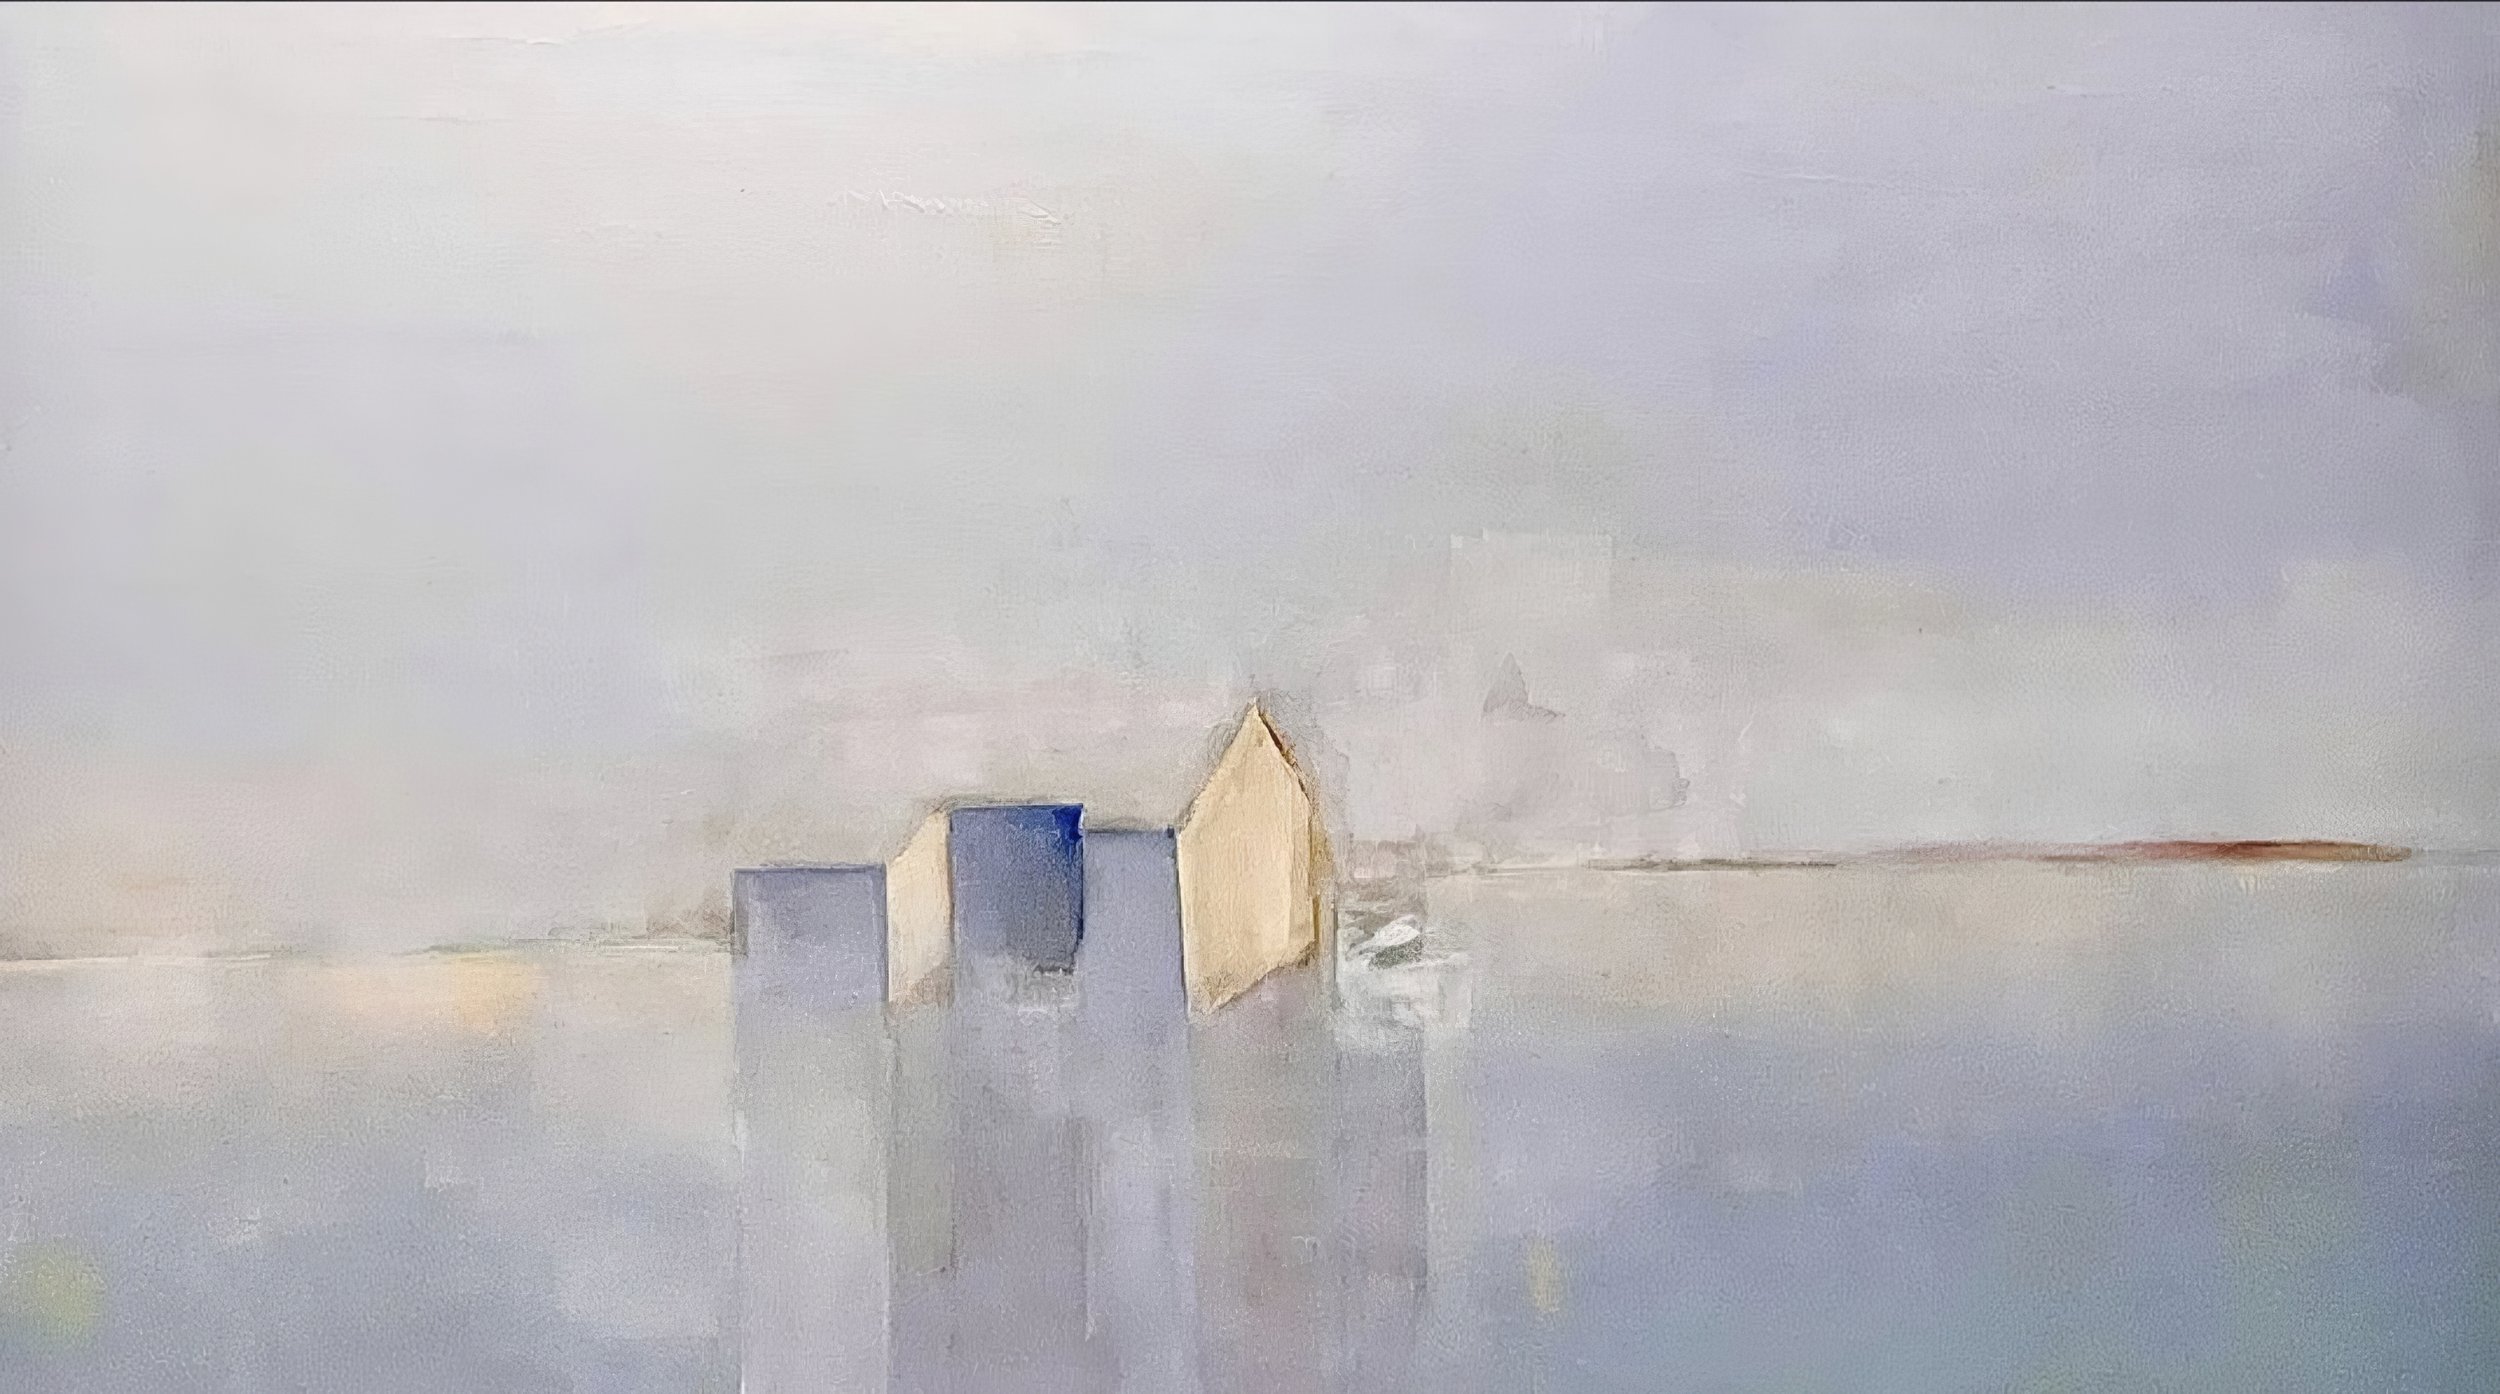 House in Fog, 40” x 30”, oil on aluminum, 2023